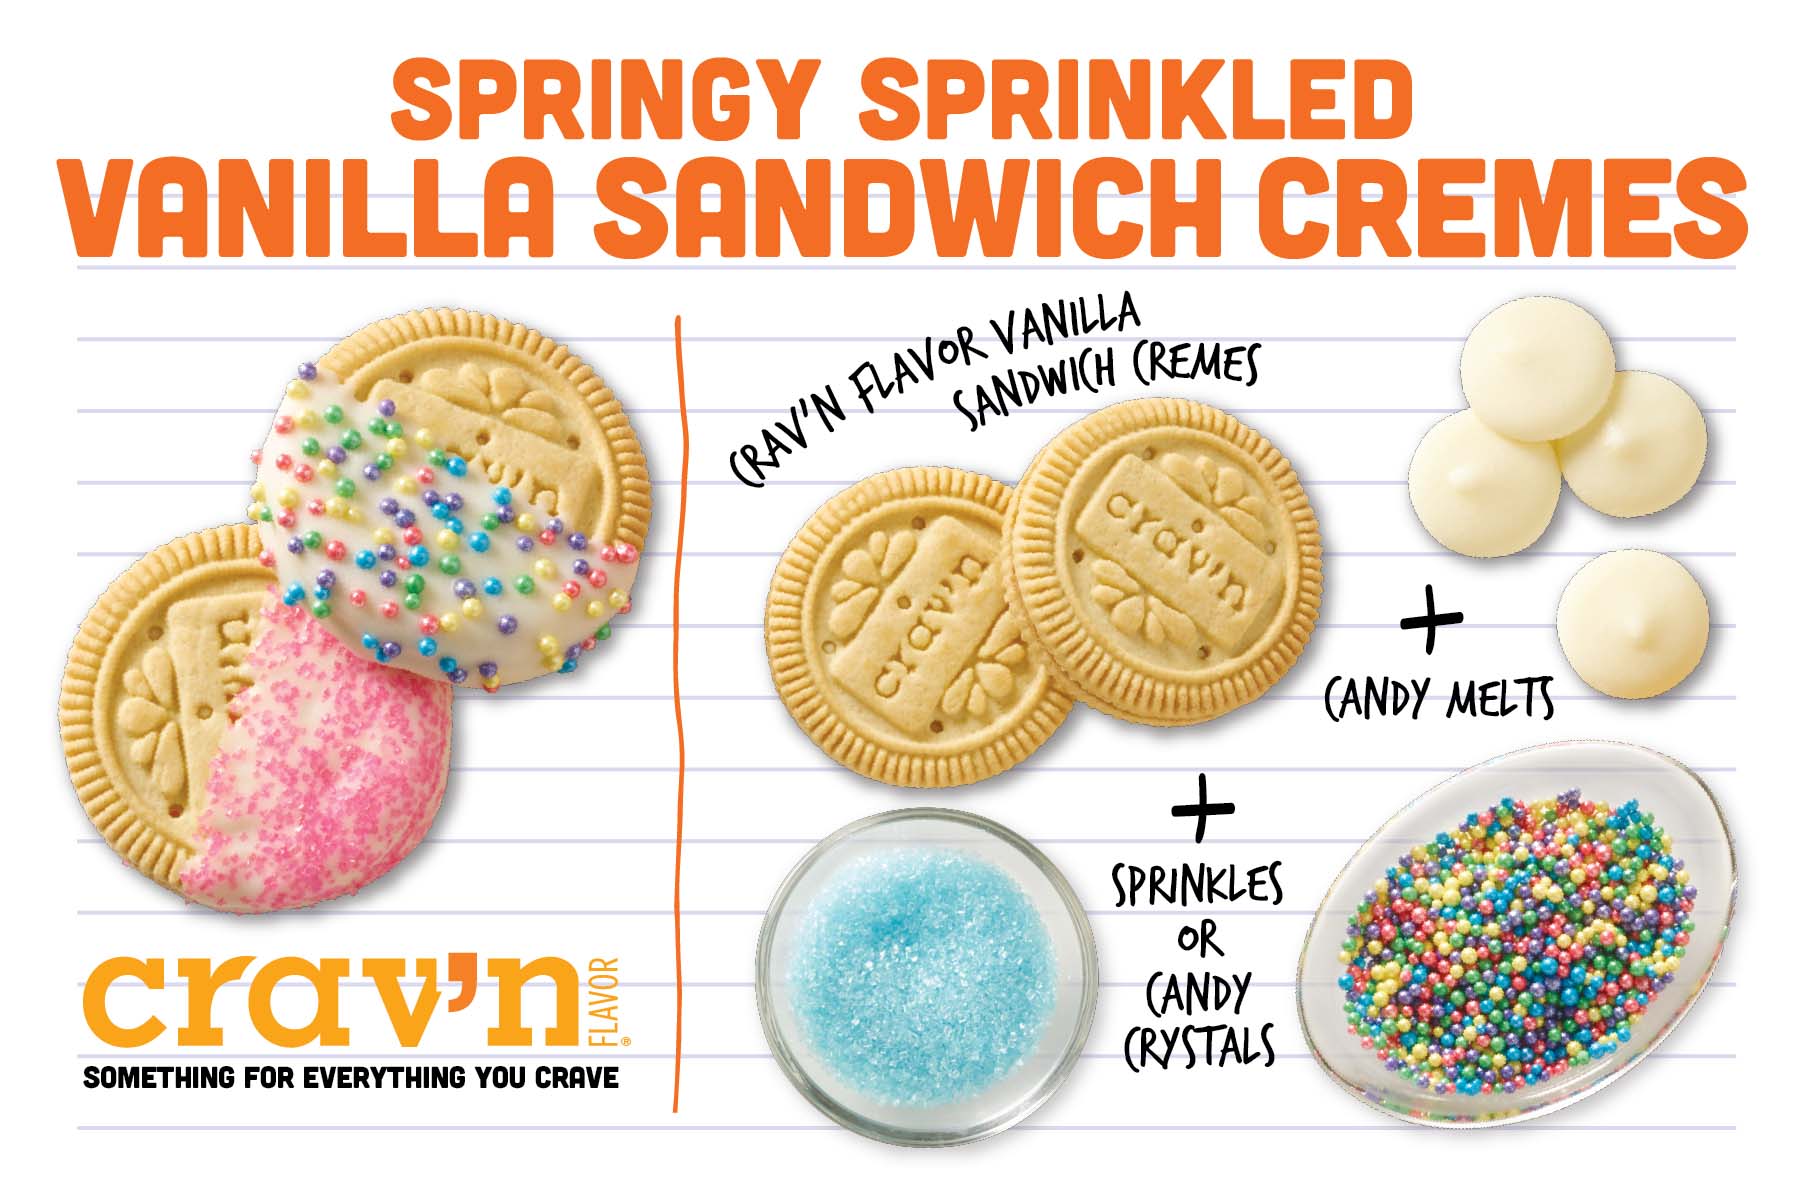 Springy Sprinkled Vanilla Sandwich Creams